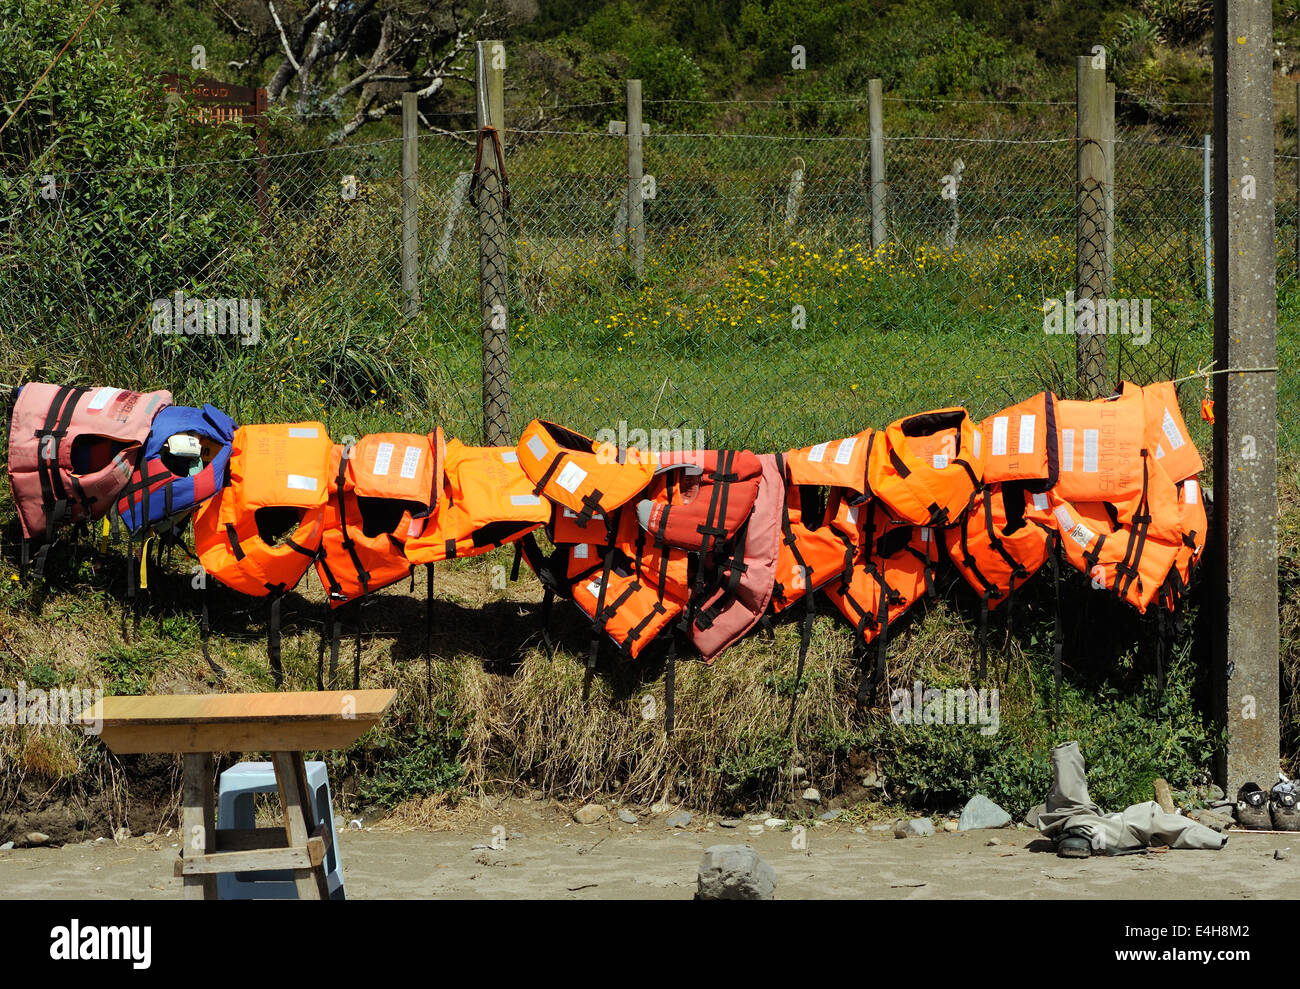 Giubbotti di salvataggio per i turisti in visita alla colonia di pinguini appendere fuori ad asciugare sulla spiaggia di Puñihuil. Puñihuil, Isla Grande de Chiloe, Foto Stock